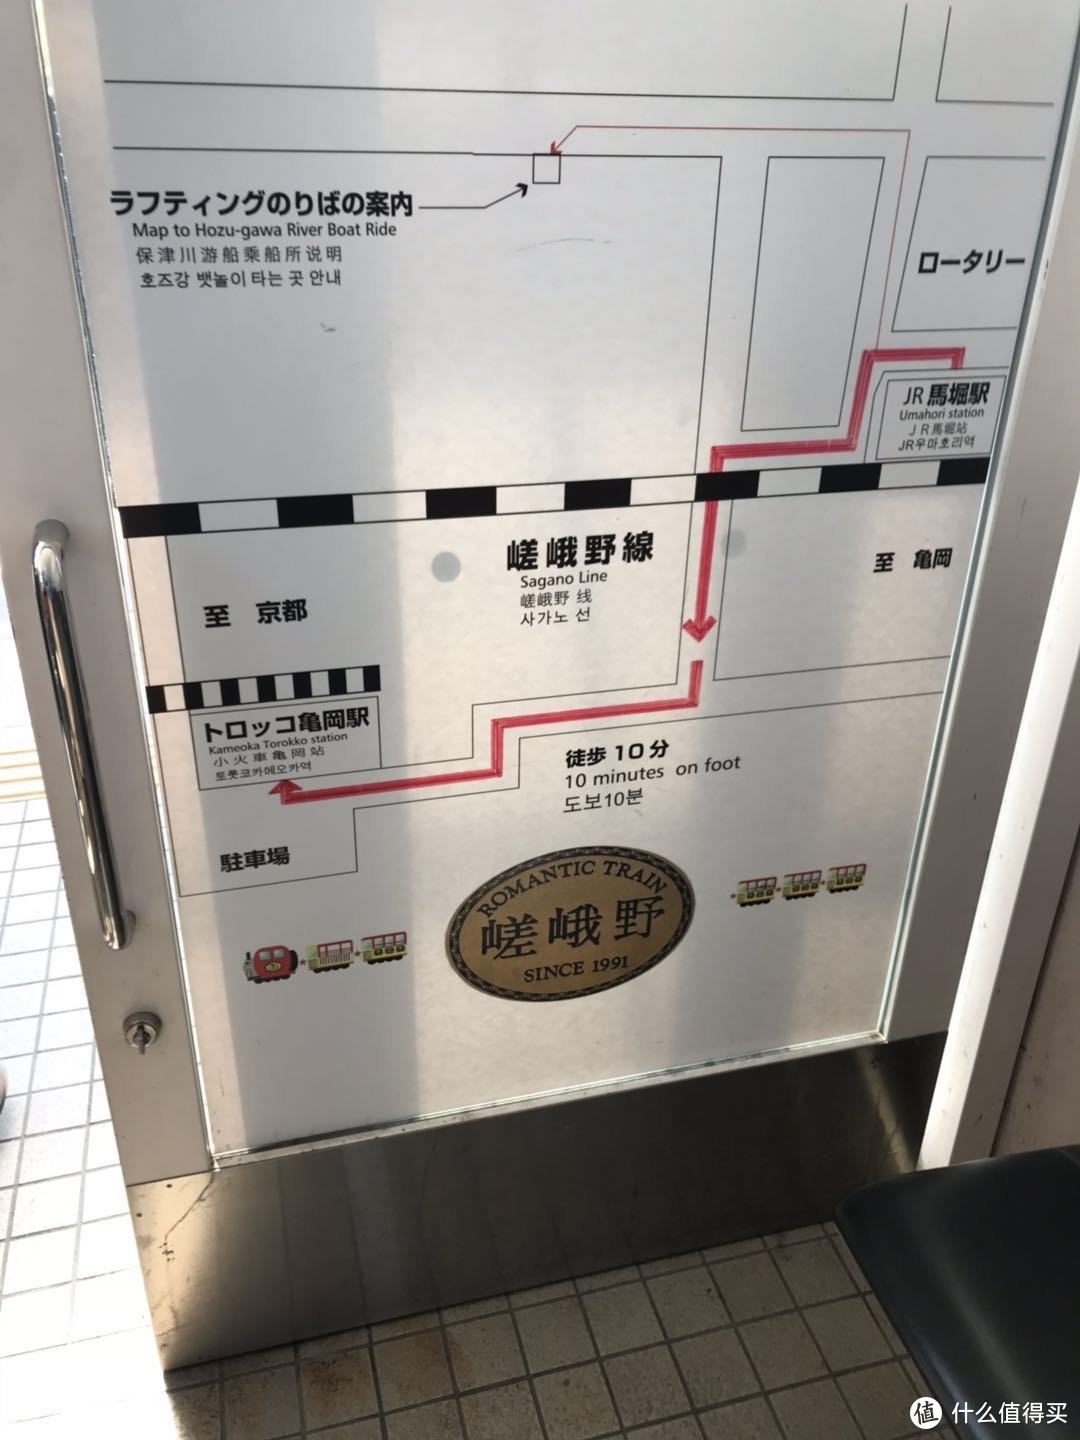 JR马堀站前往小火车龟冈站的路线